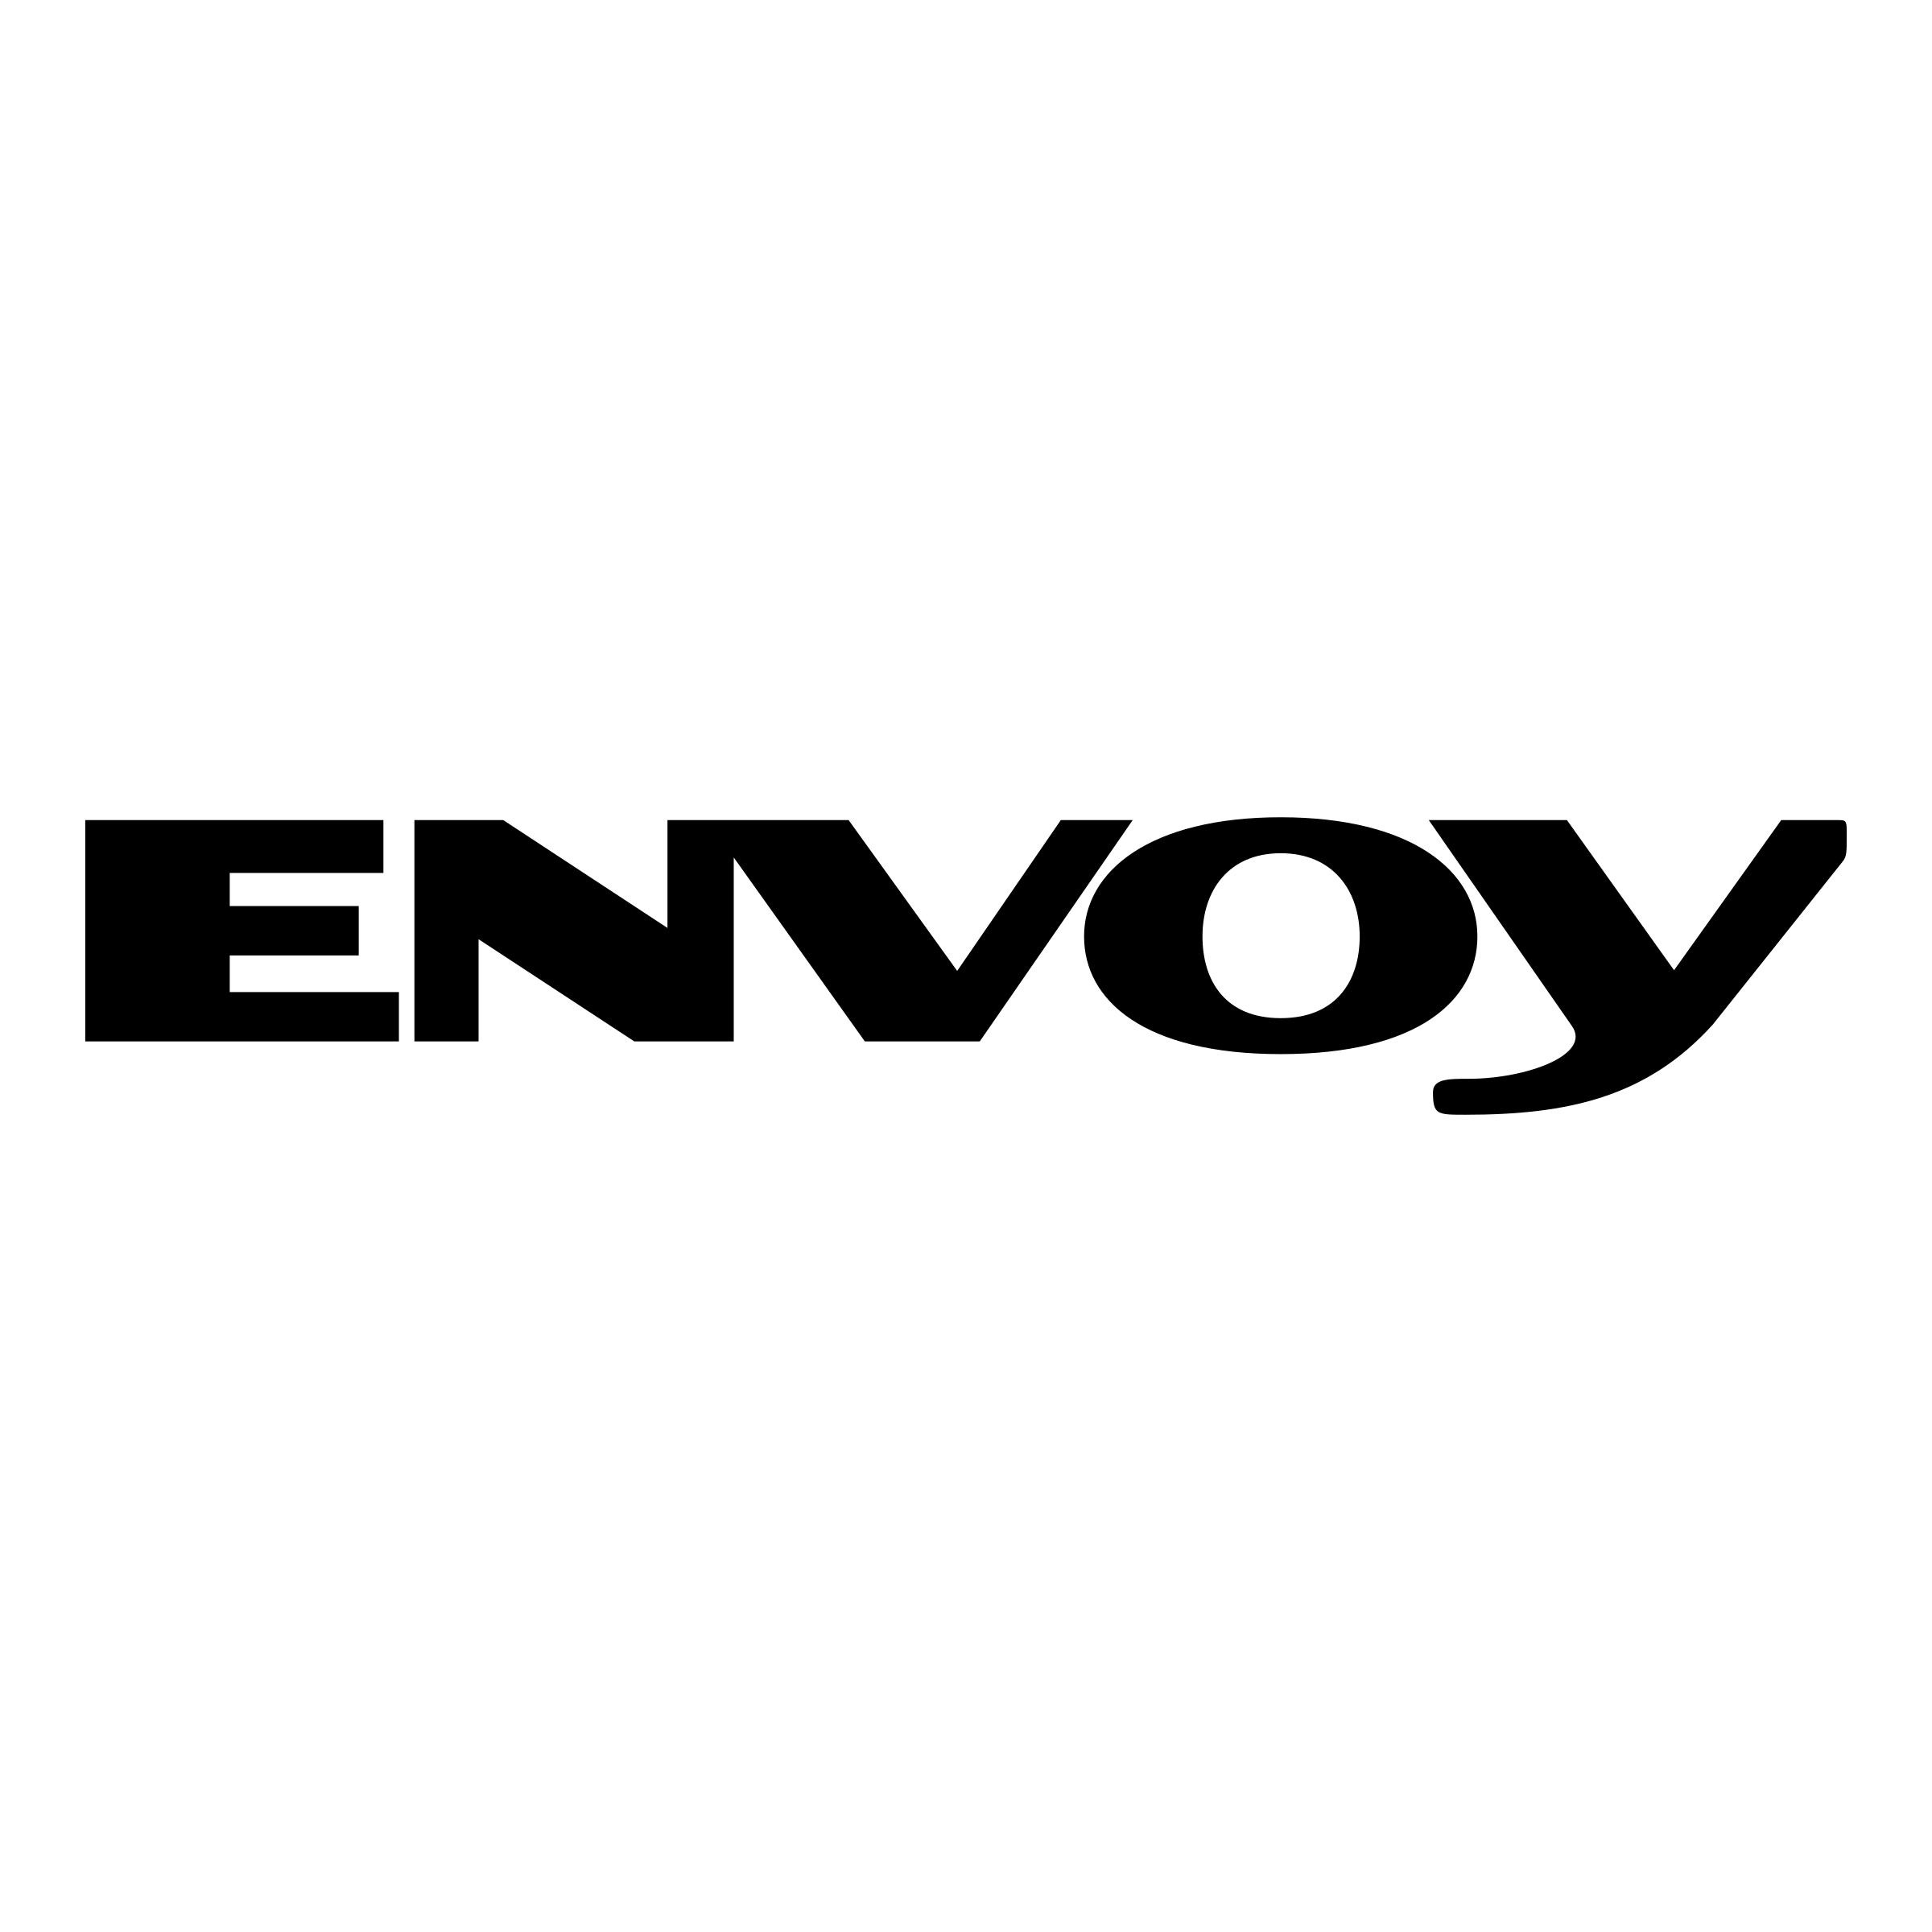 Envoy Logo - Envoy Logo PNG Transparent & SVG Vector